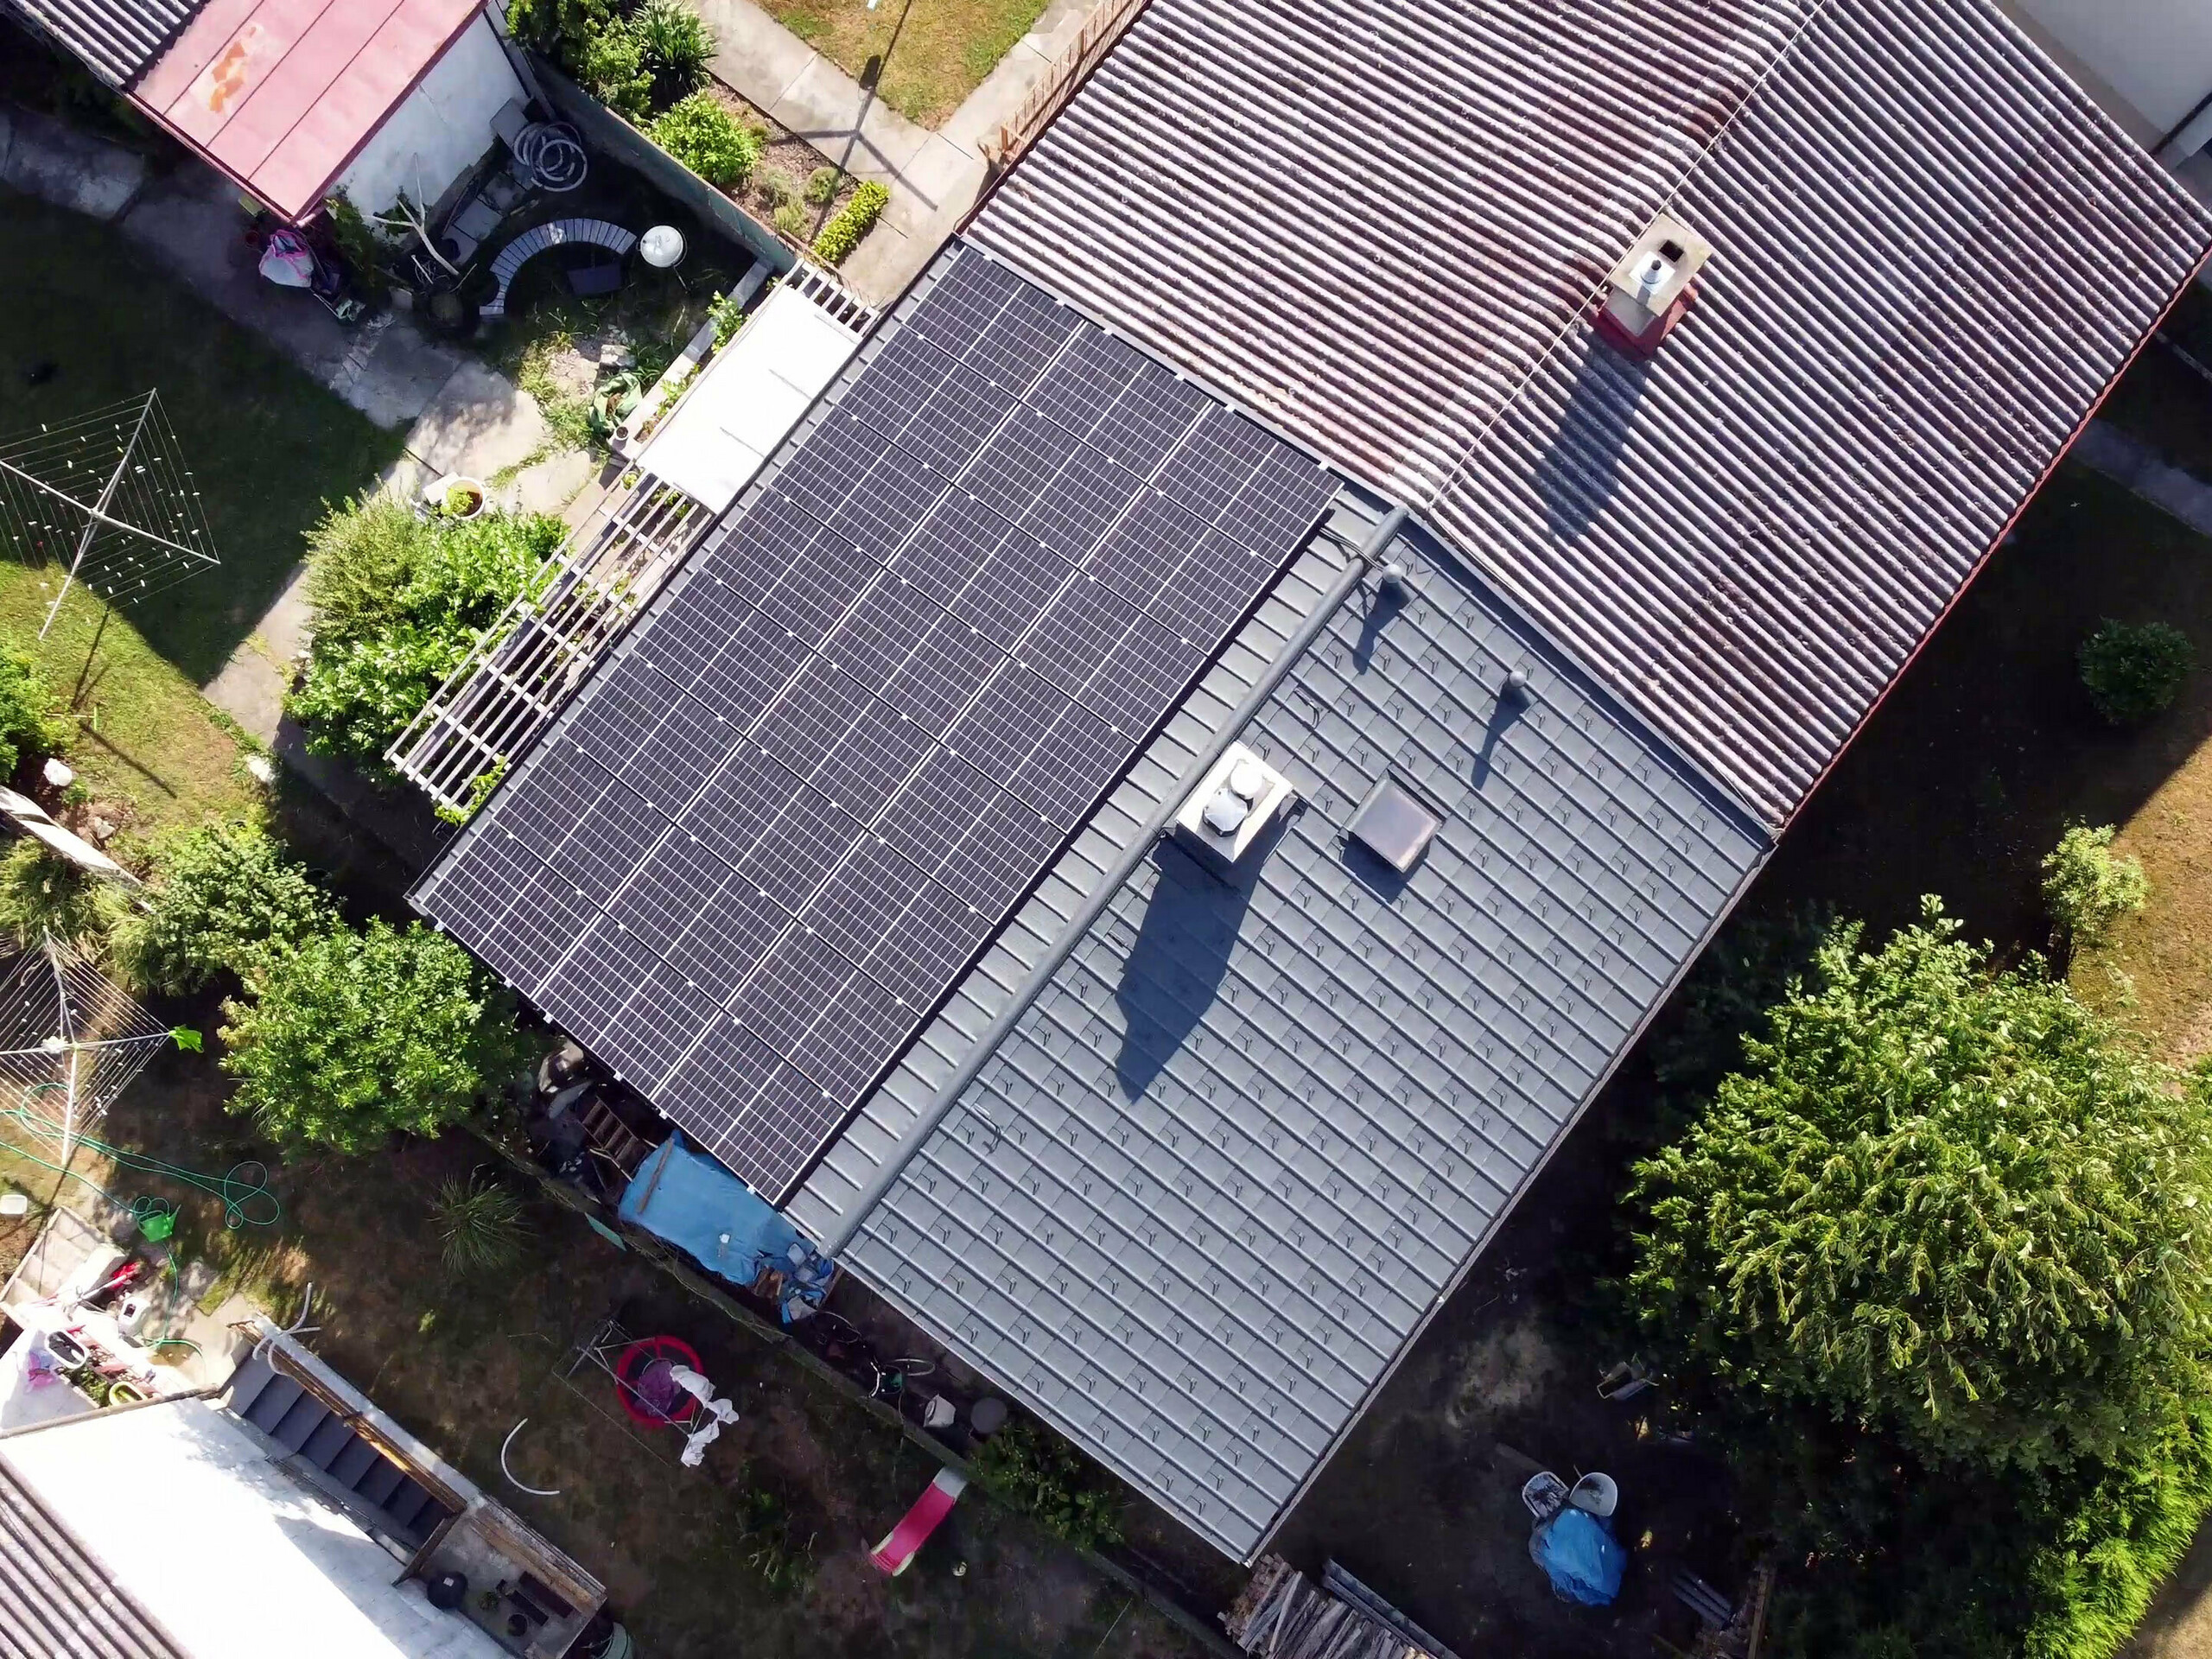 Blick auf das neu sanierte Dach mit der installierten Photovoltaikanlage.